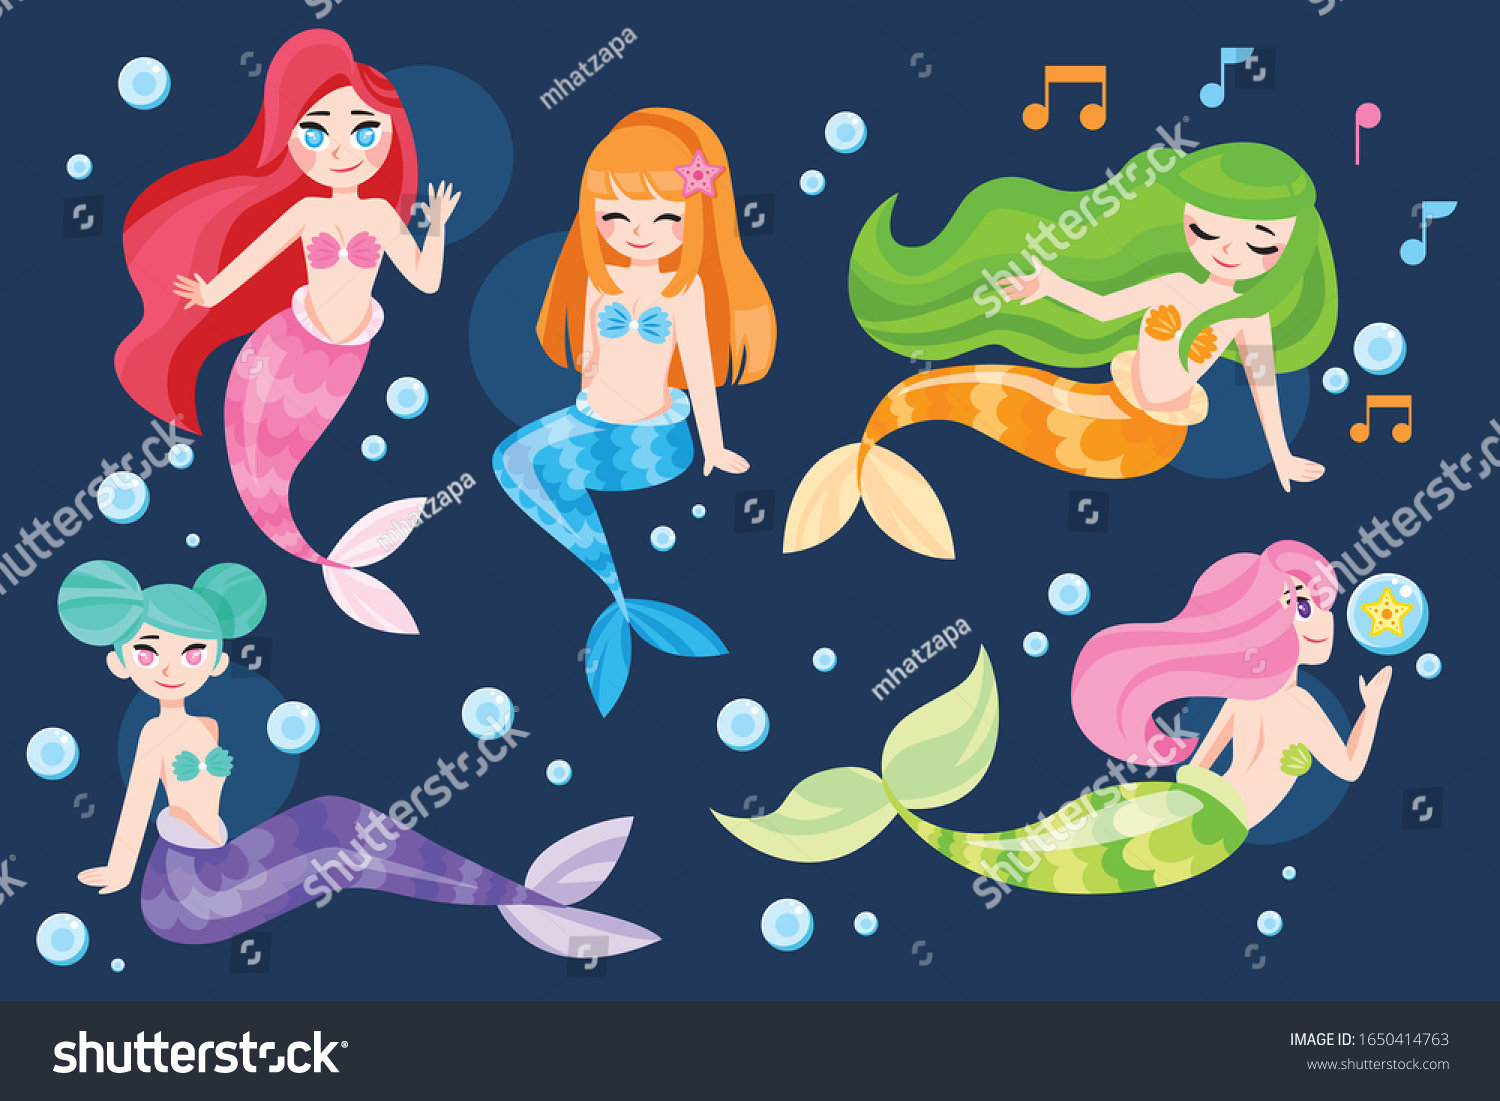 Set Cute Mermaid Cartoon Vector Illustration Stock Vector Royalty Free 1650414763 Shutterstock